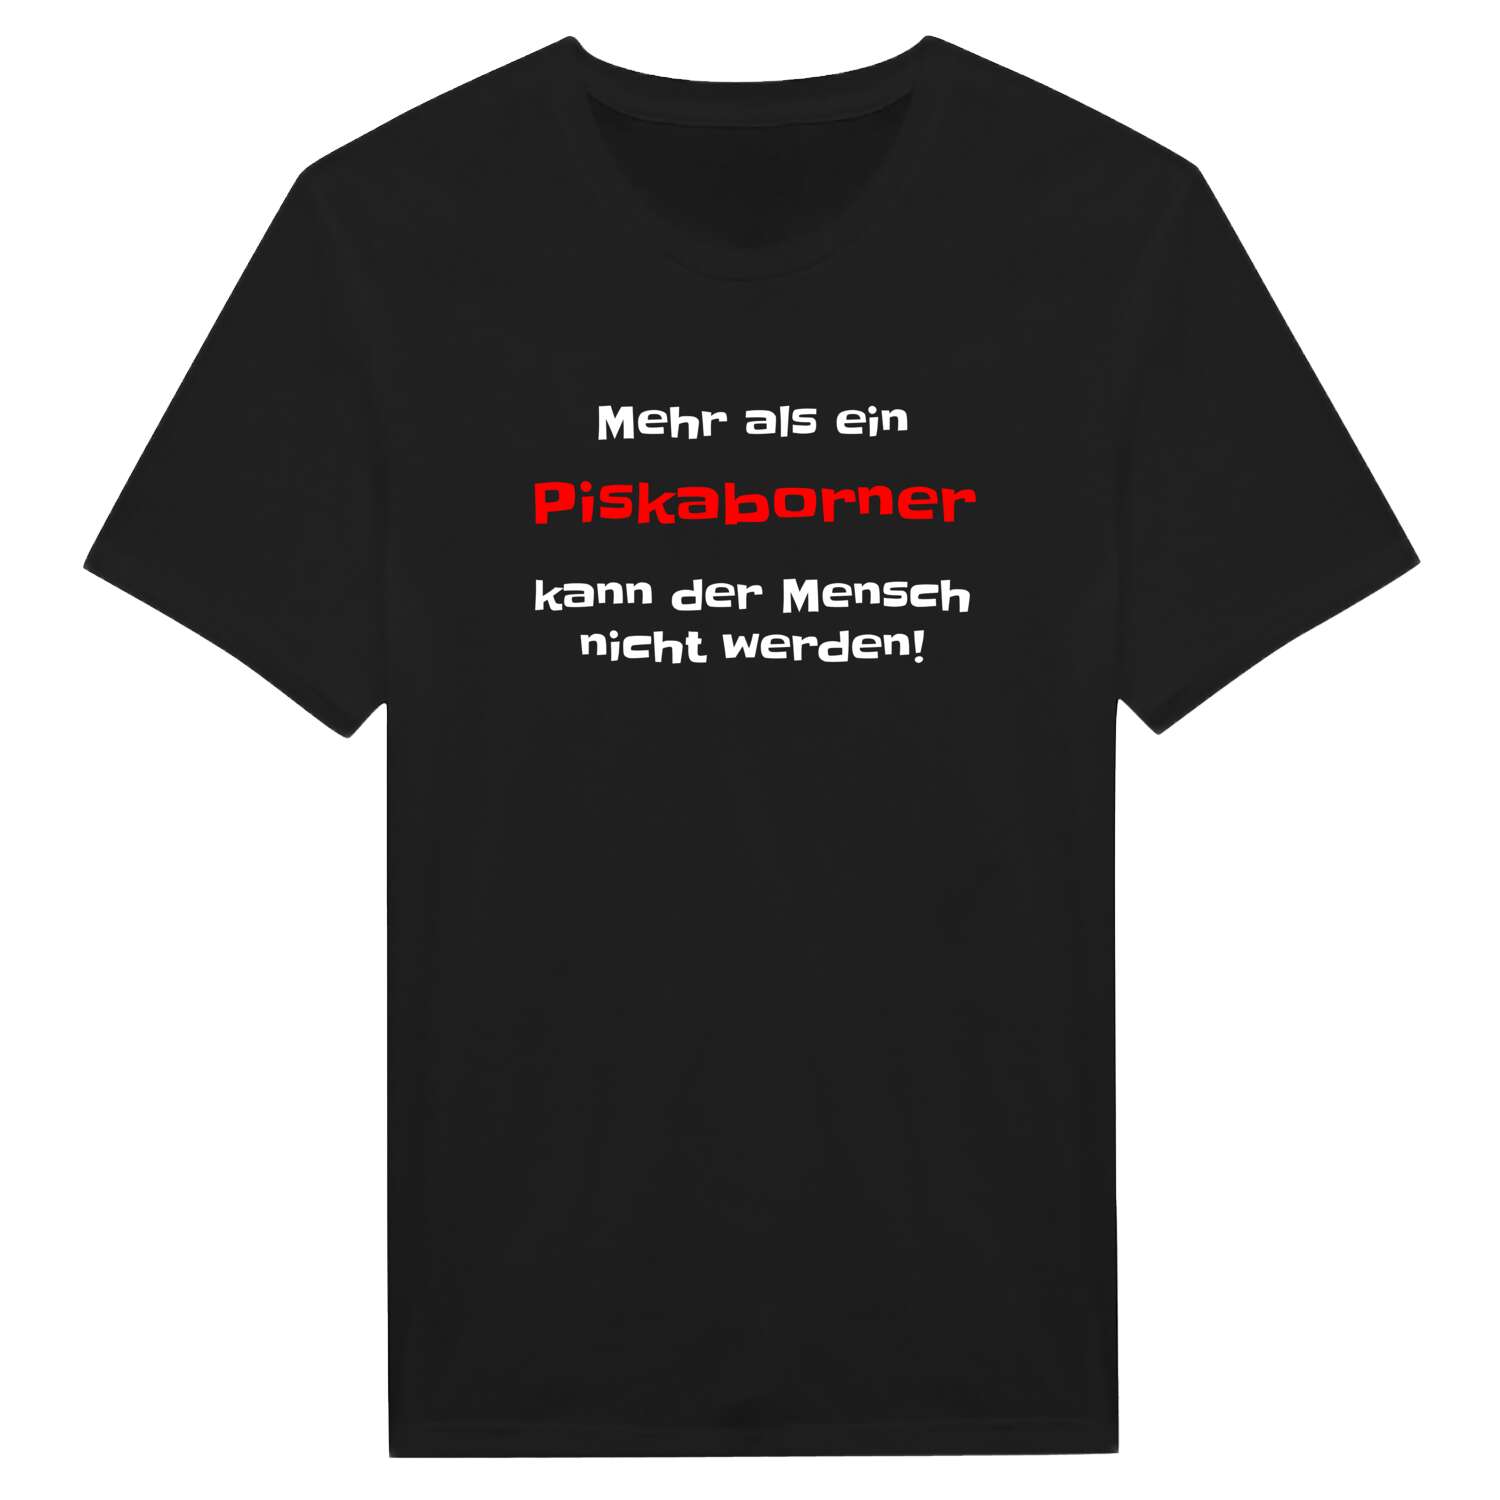 Piskaborn T-Shirt »Mehr als ein«